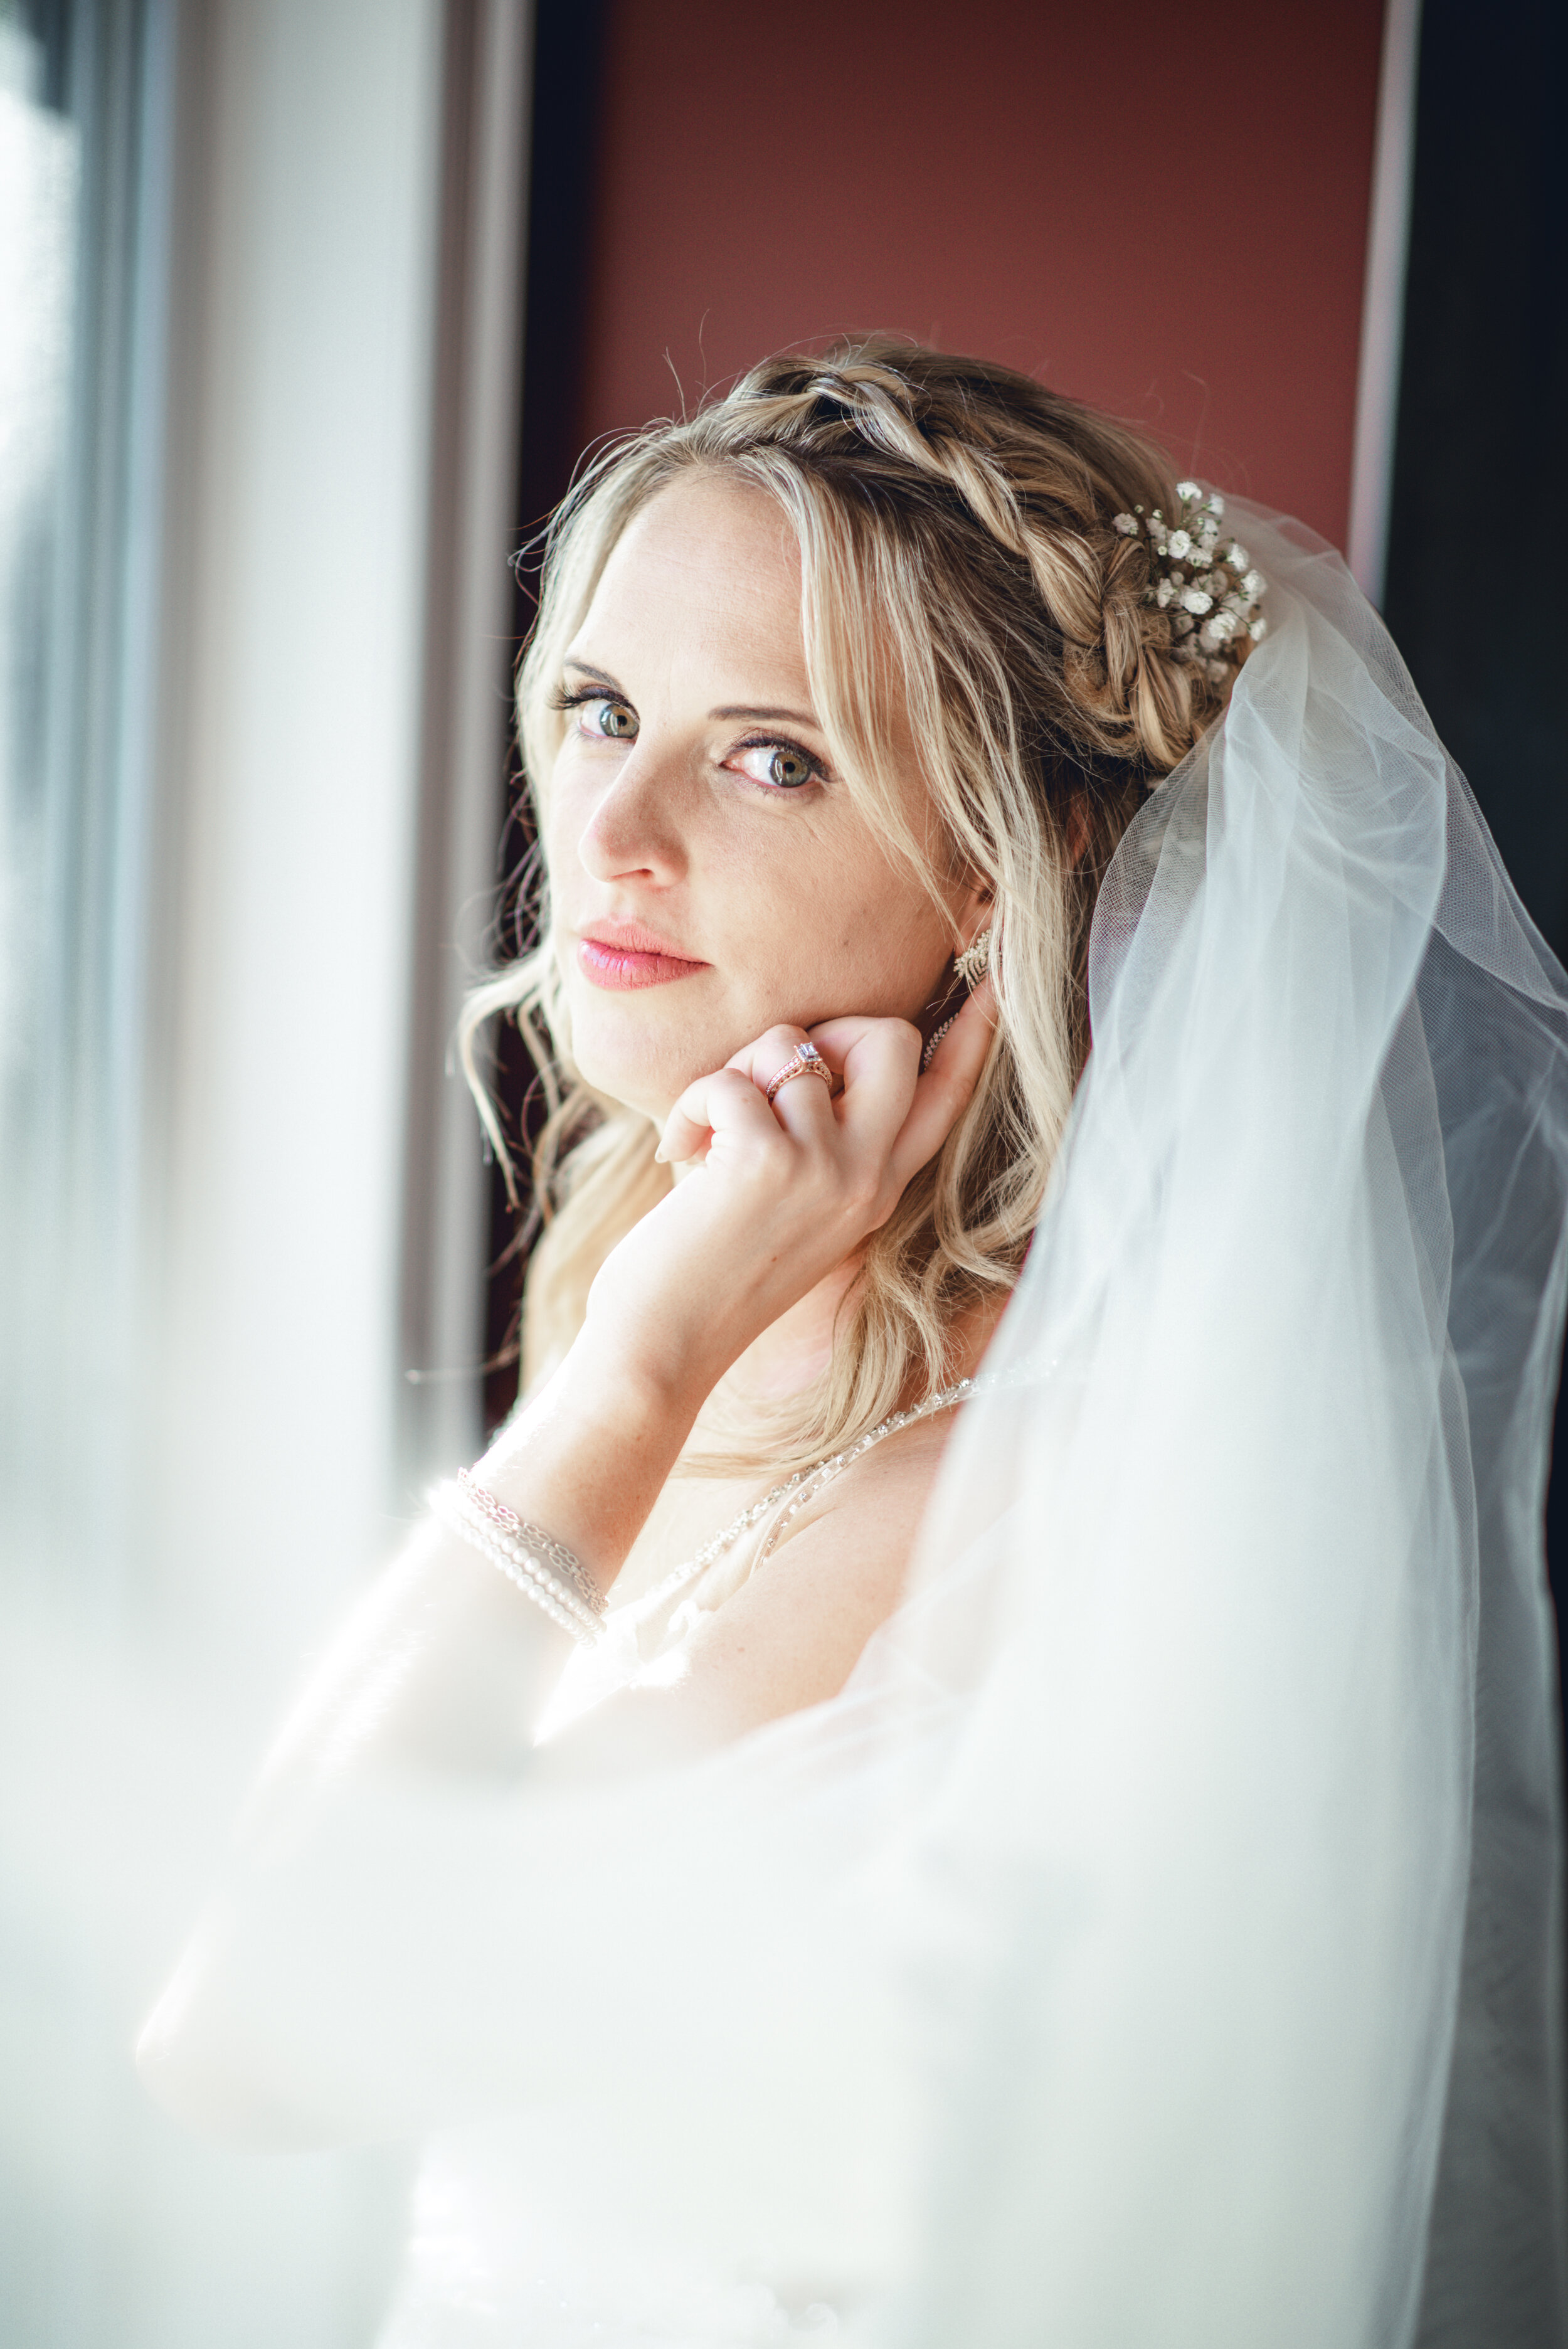 Bride portrait - eTangPhotography.com